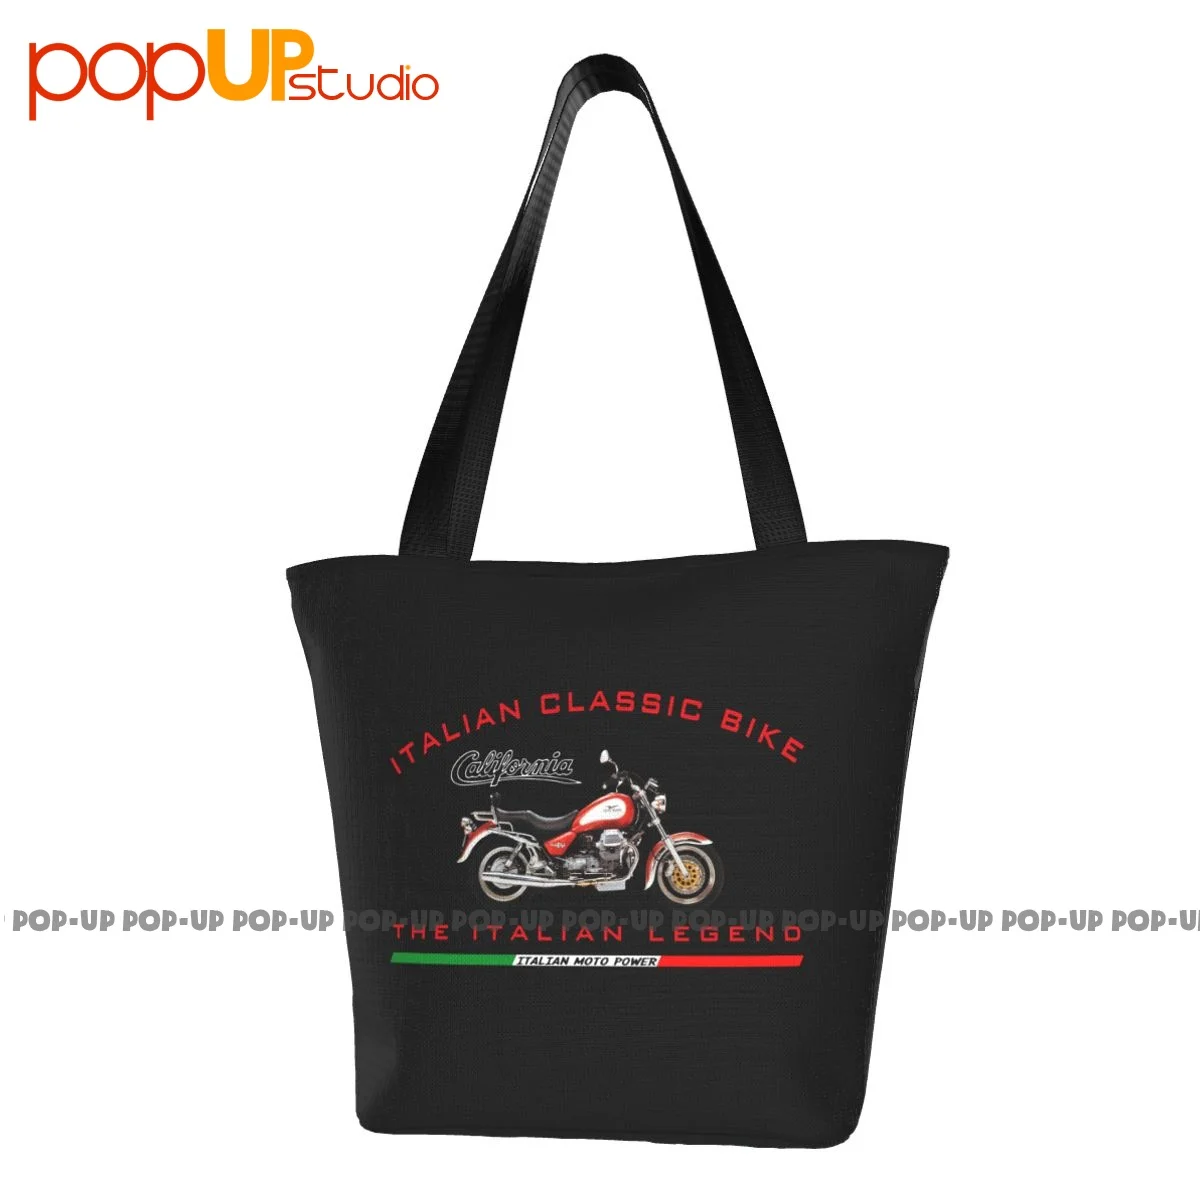 California Moto Guzzi Для любителей быстрых итальянских велосипедов Забавные сумки Многоразовая сумка для покупок в супермаркете